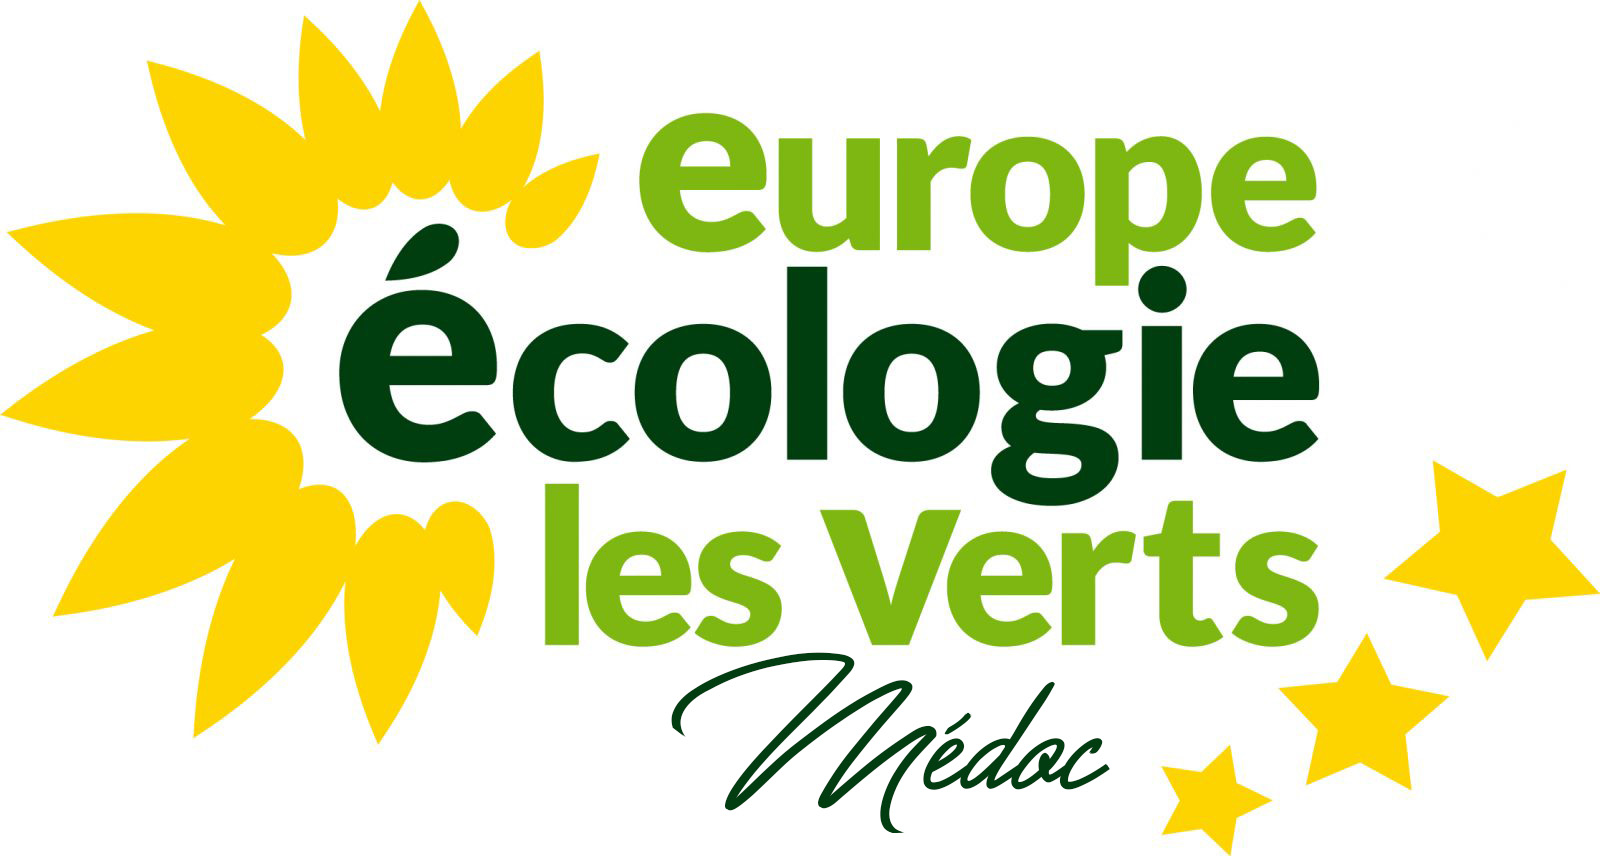 Europe Ecologie Les Verts – Médoc